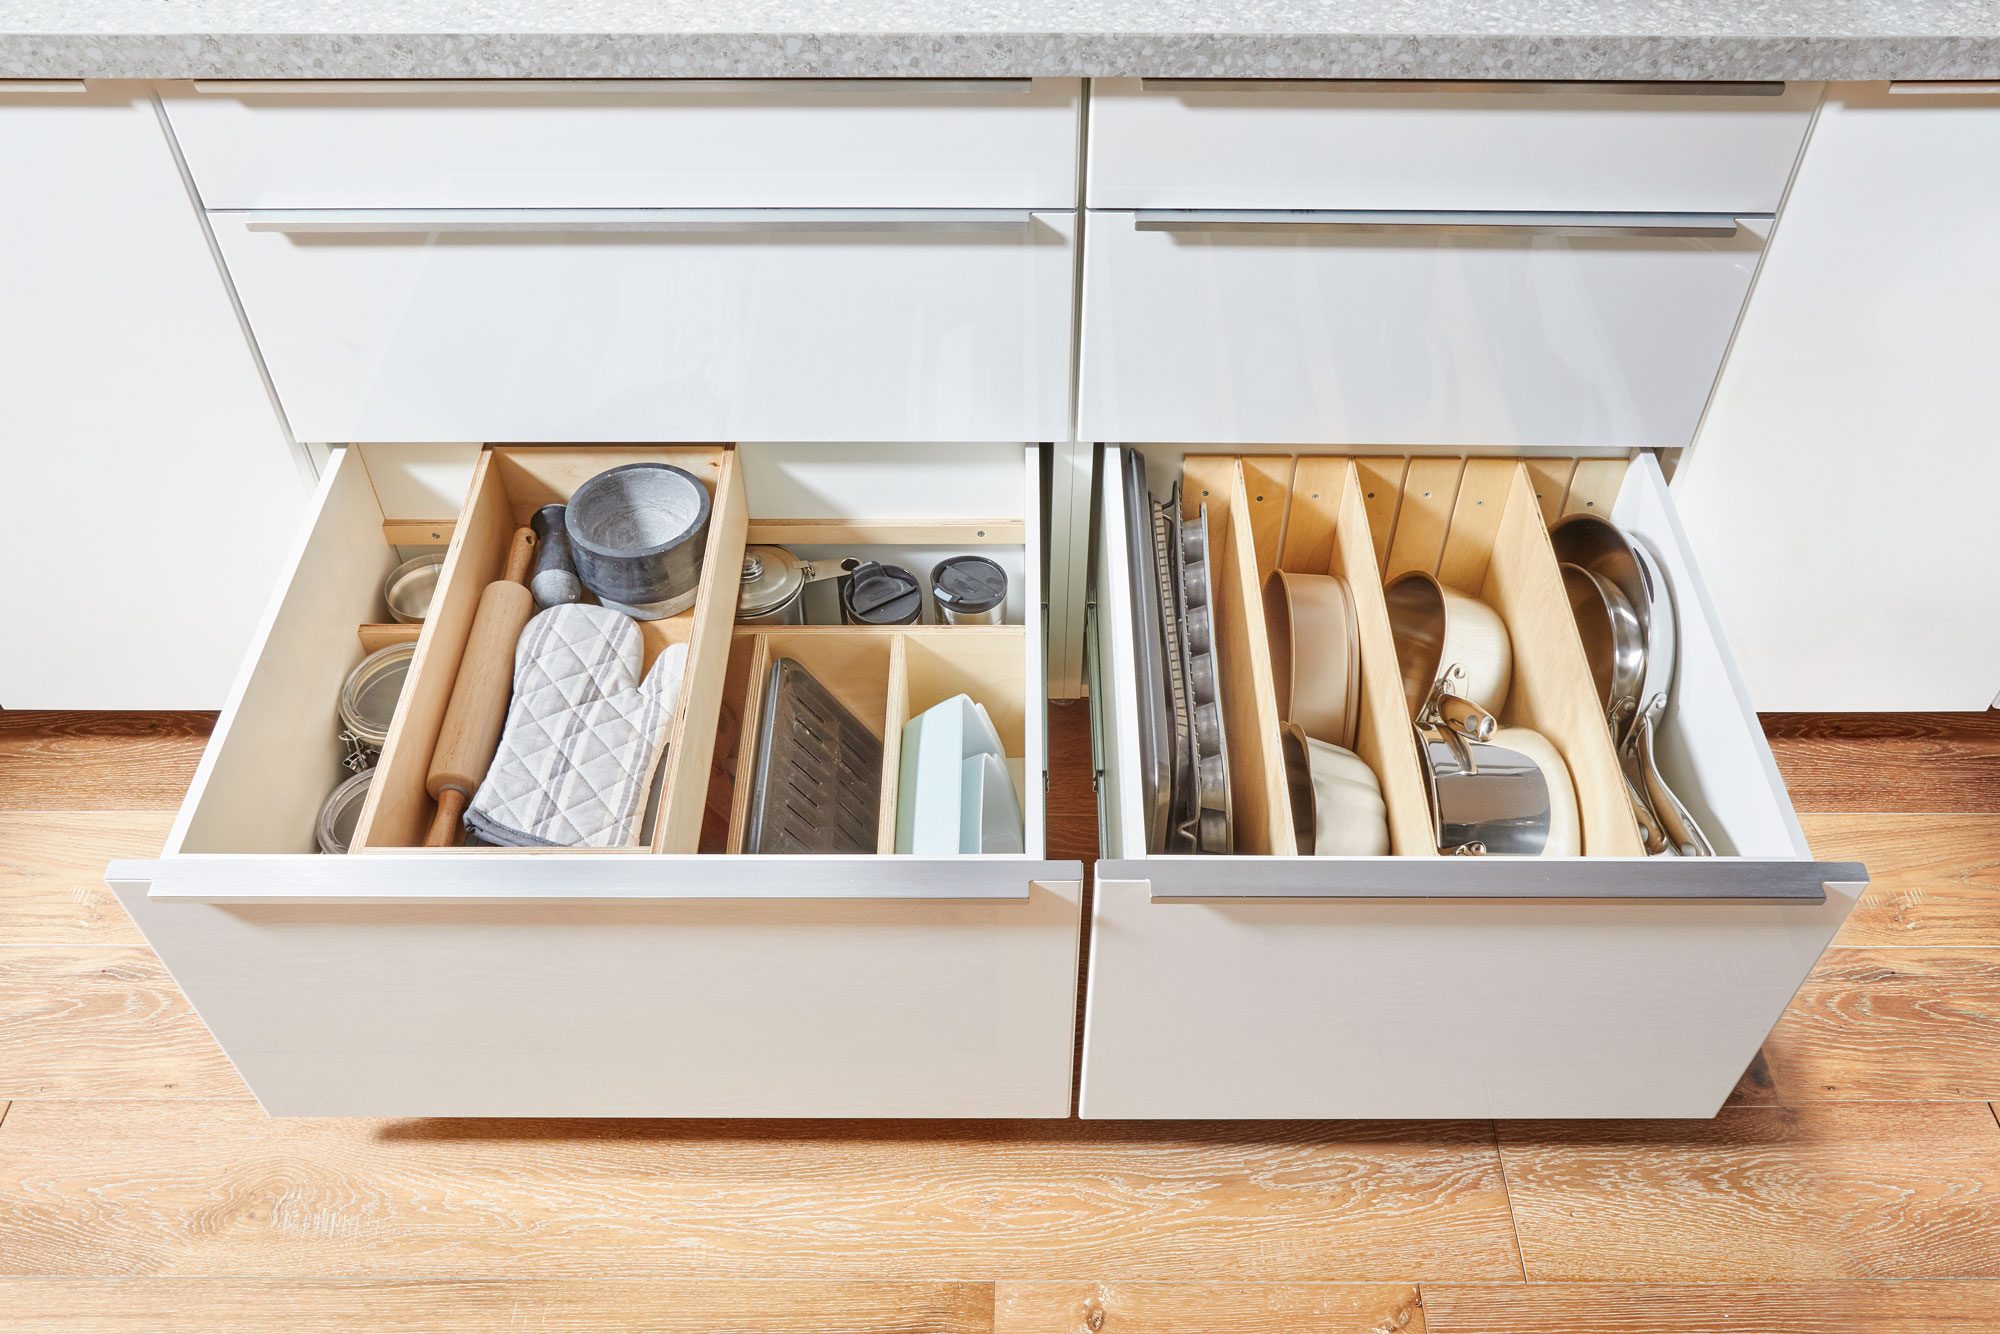 German Kitchen Cabinets by Bauformat USA  Kitchen drawer organization, Diy  kitchen storage, Kitchen cabinet design